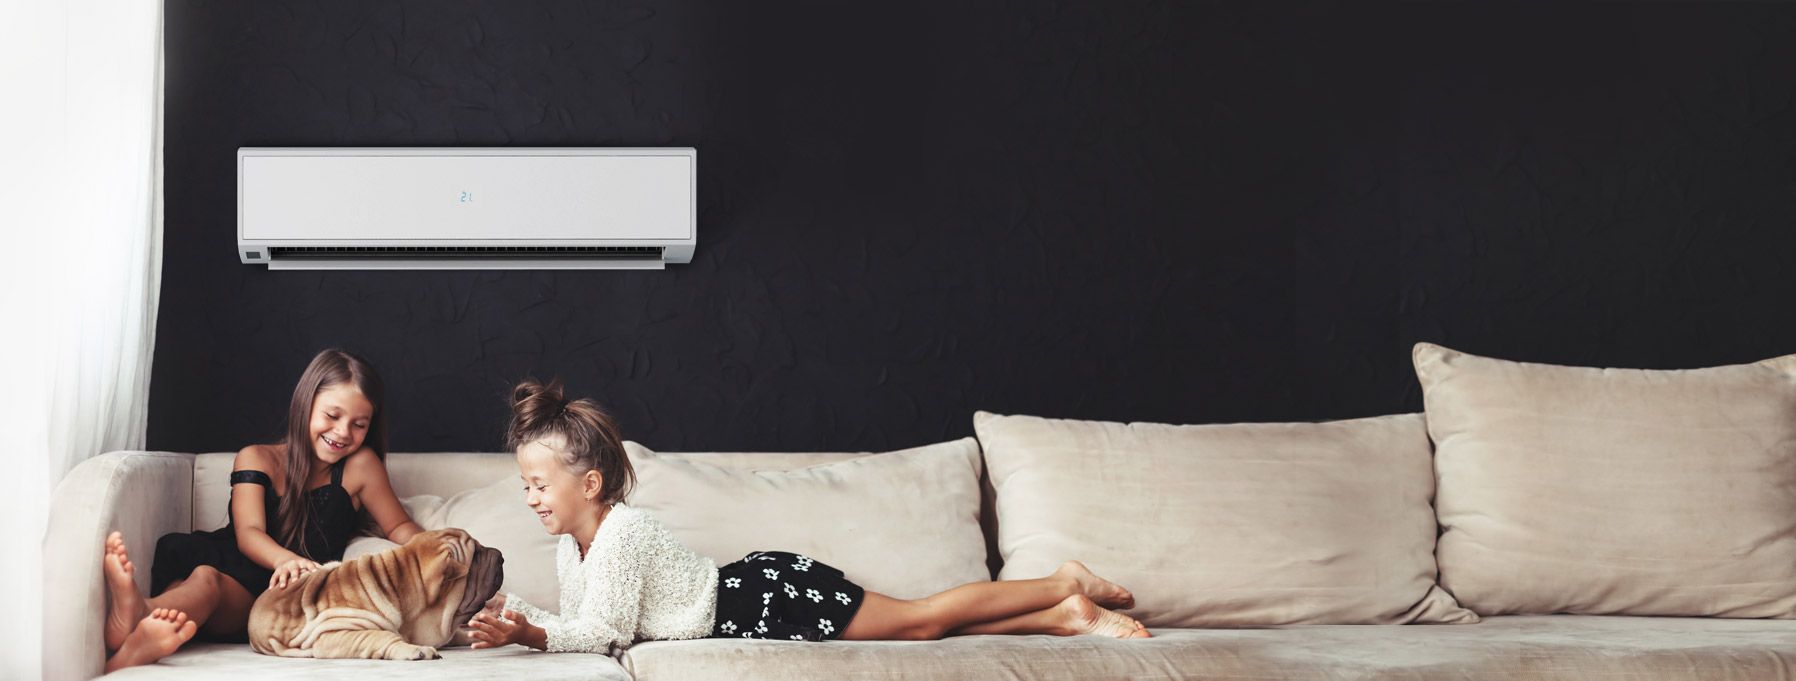 Günstige Klimaanlagen online kaufen